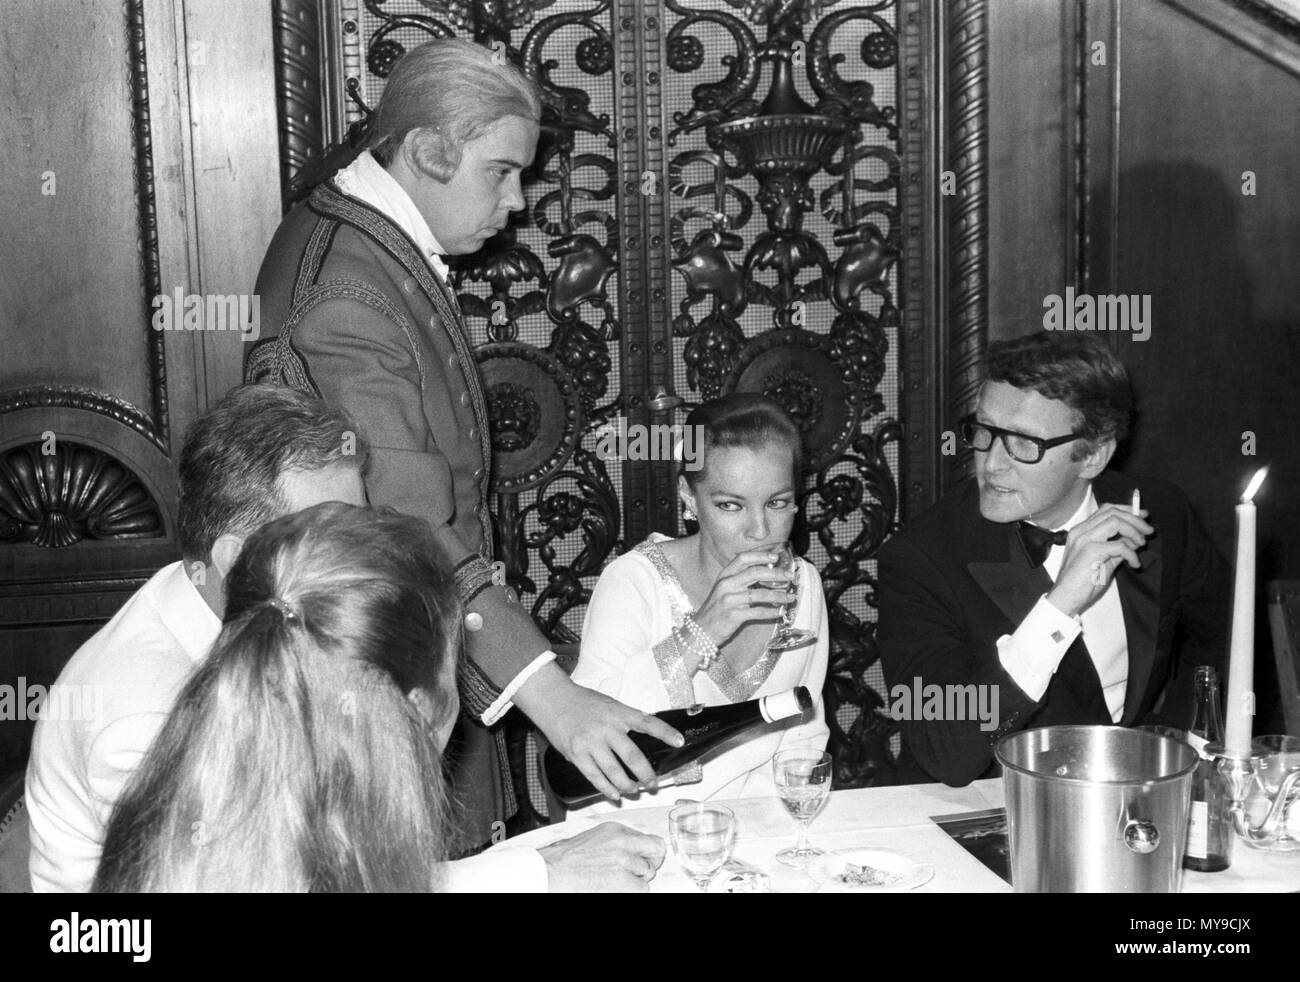 L'attrice Romy Schneider e il marito Harry Meyen (r). La notte di Domenica, 23 giugno 1968, a mezzanotte degustazione di vino ha avuto luogo presso la struttura Schlosshotel Gerhus im Grunewald a Berlino in occasione del festival della pellicola. | Utilizzo di tutto il mondo Foto Stock